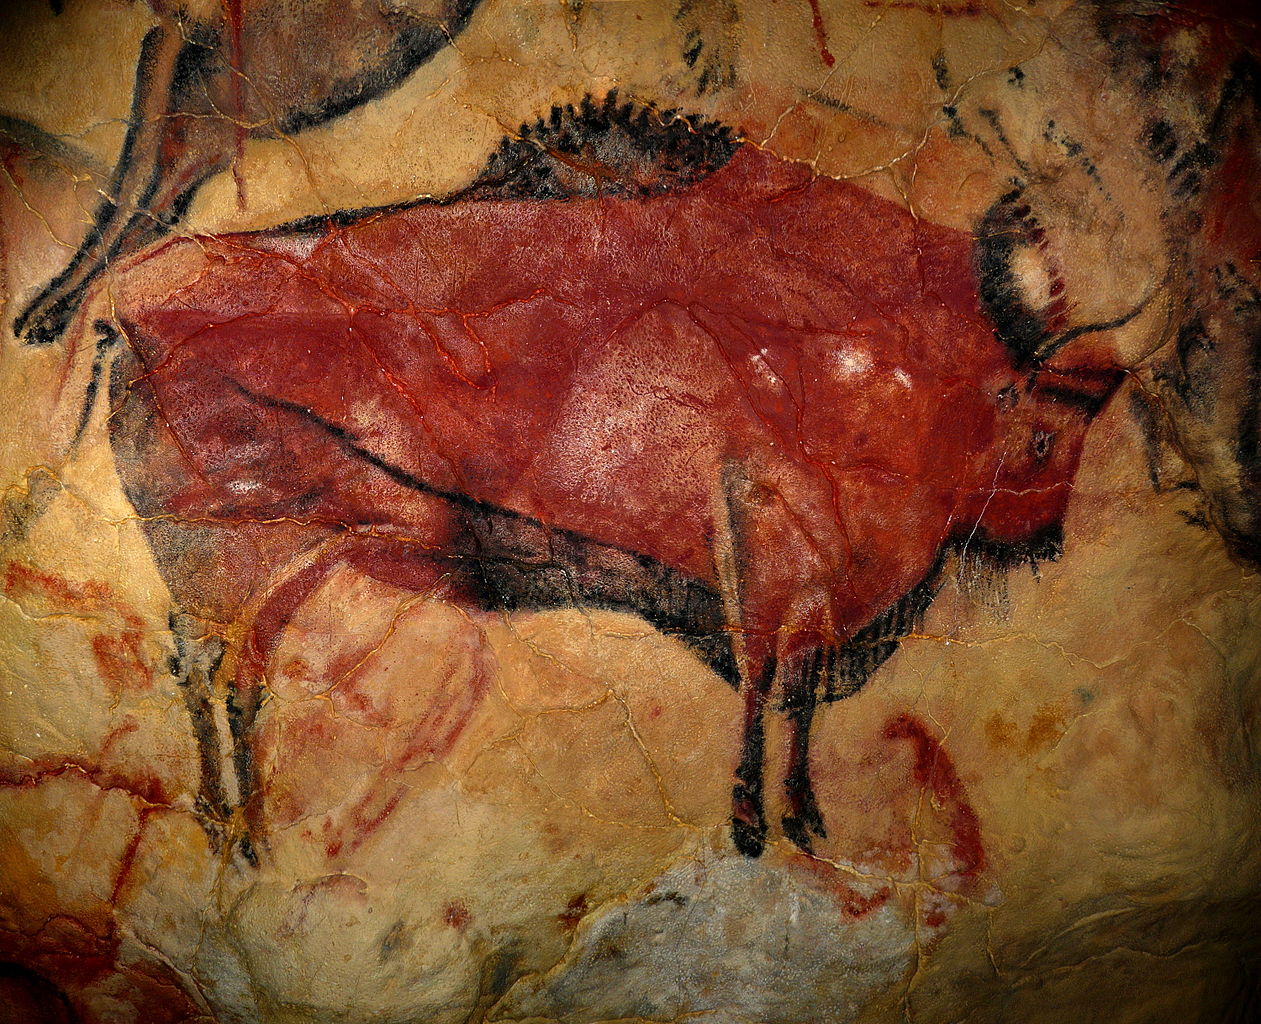 Stěny „Sixtinské kaple paleolitu“, jak je Altamira přezdívaná, mimo jiné zdobí kolem 150 obrazů bizonů.